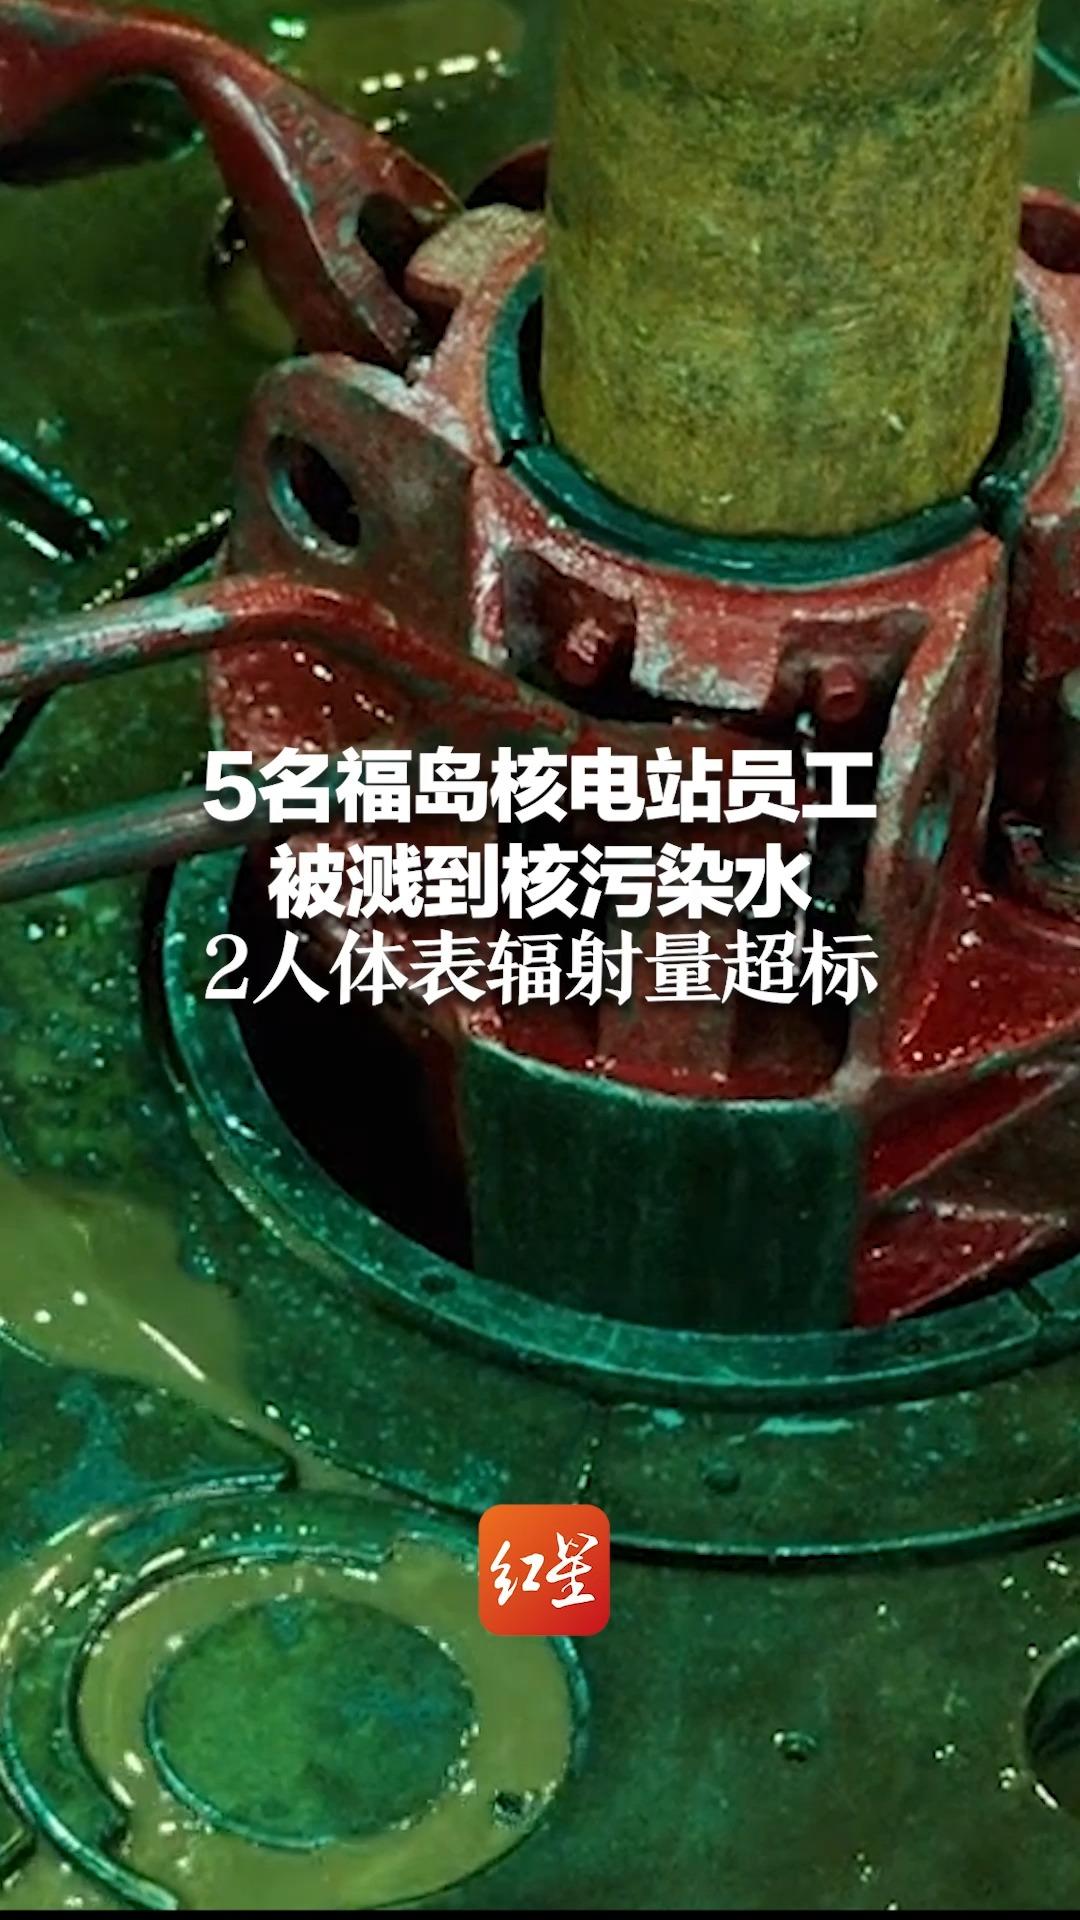 5名福岛核电站员工被溅到核污染水 2人体表辐射量超标